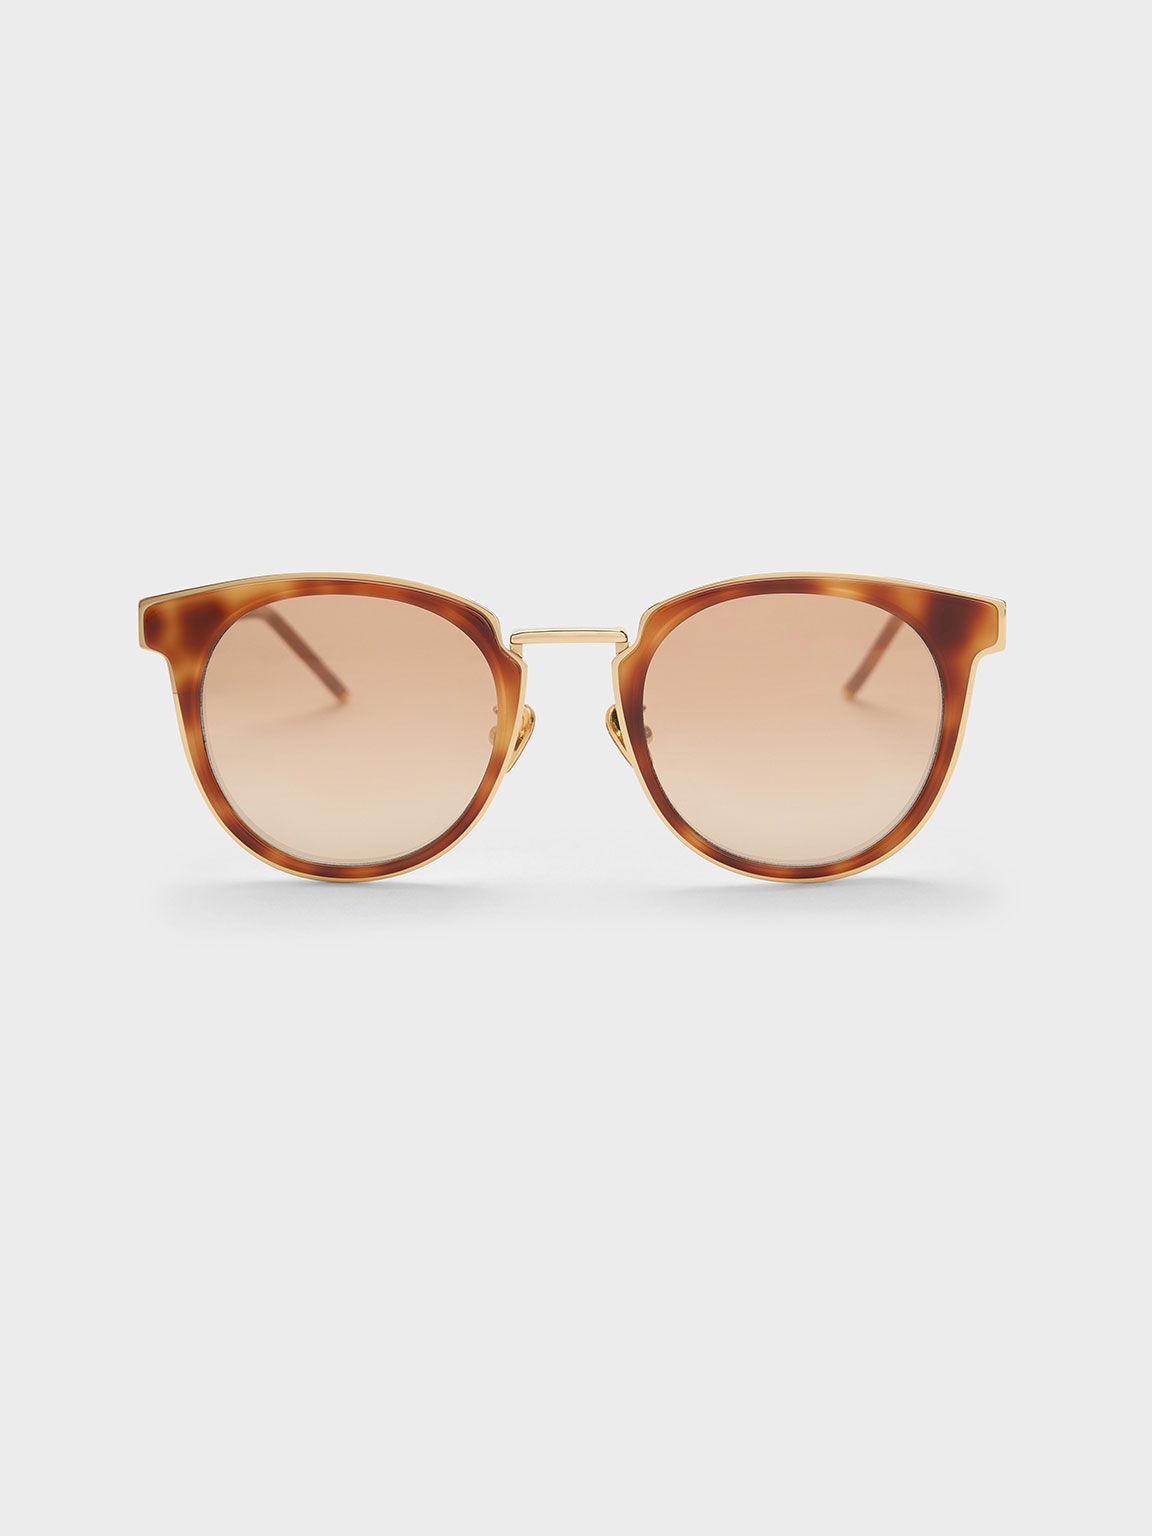 Burberry TB Monogram Acetate Square Sunglasses | Neiman Marcus